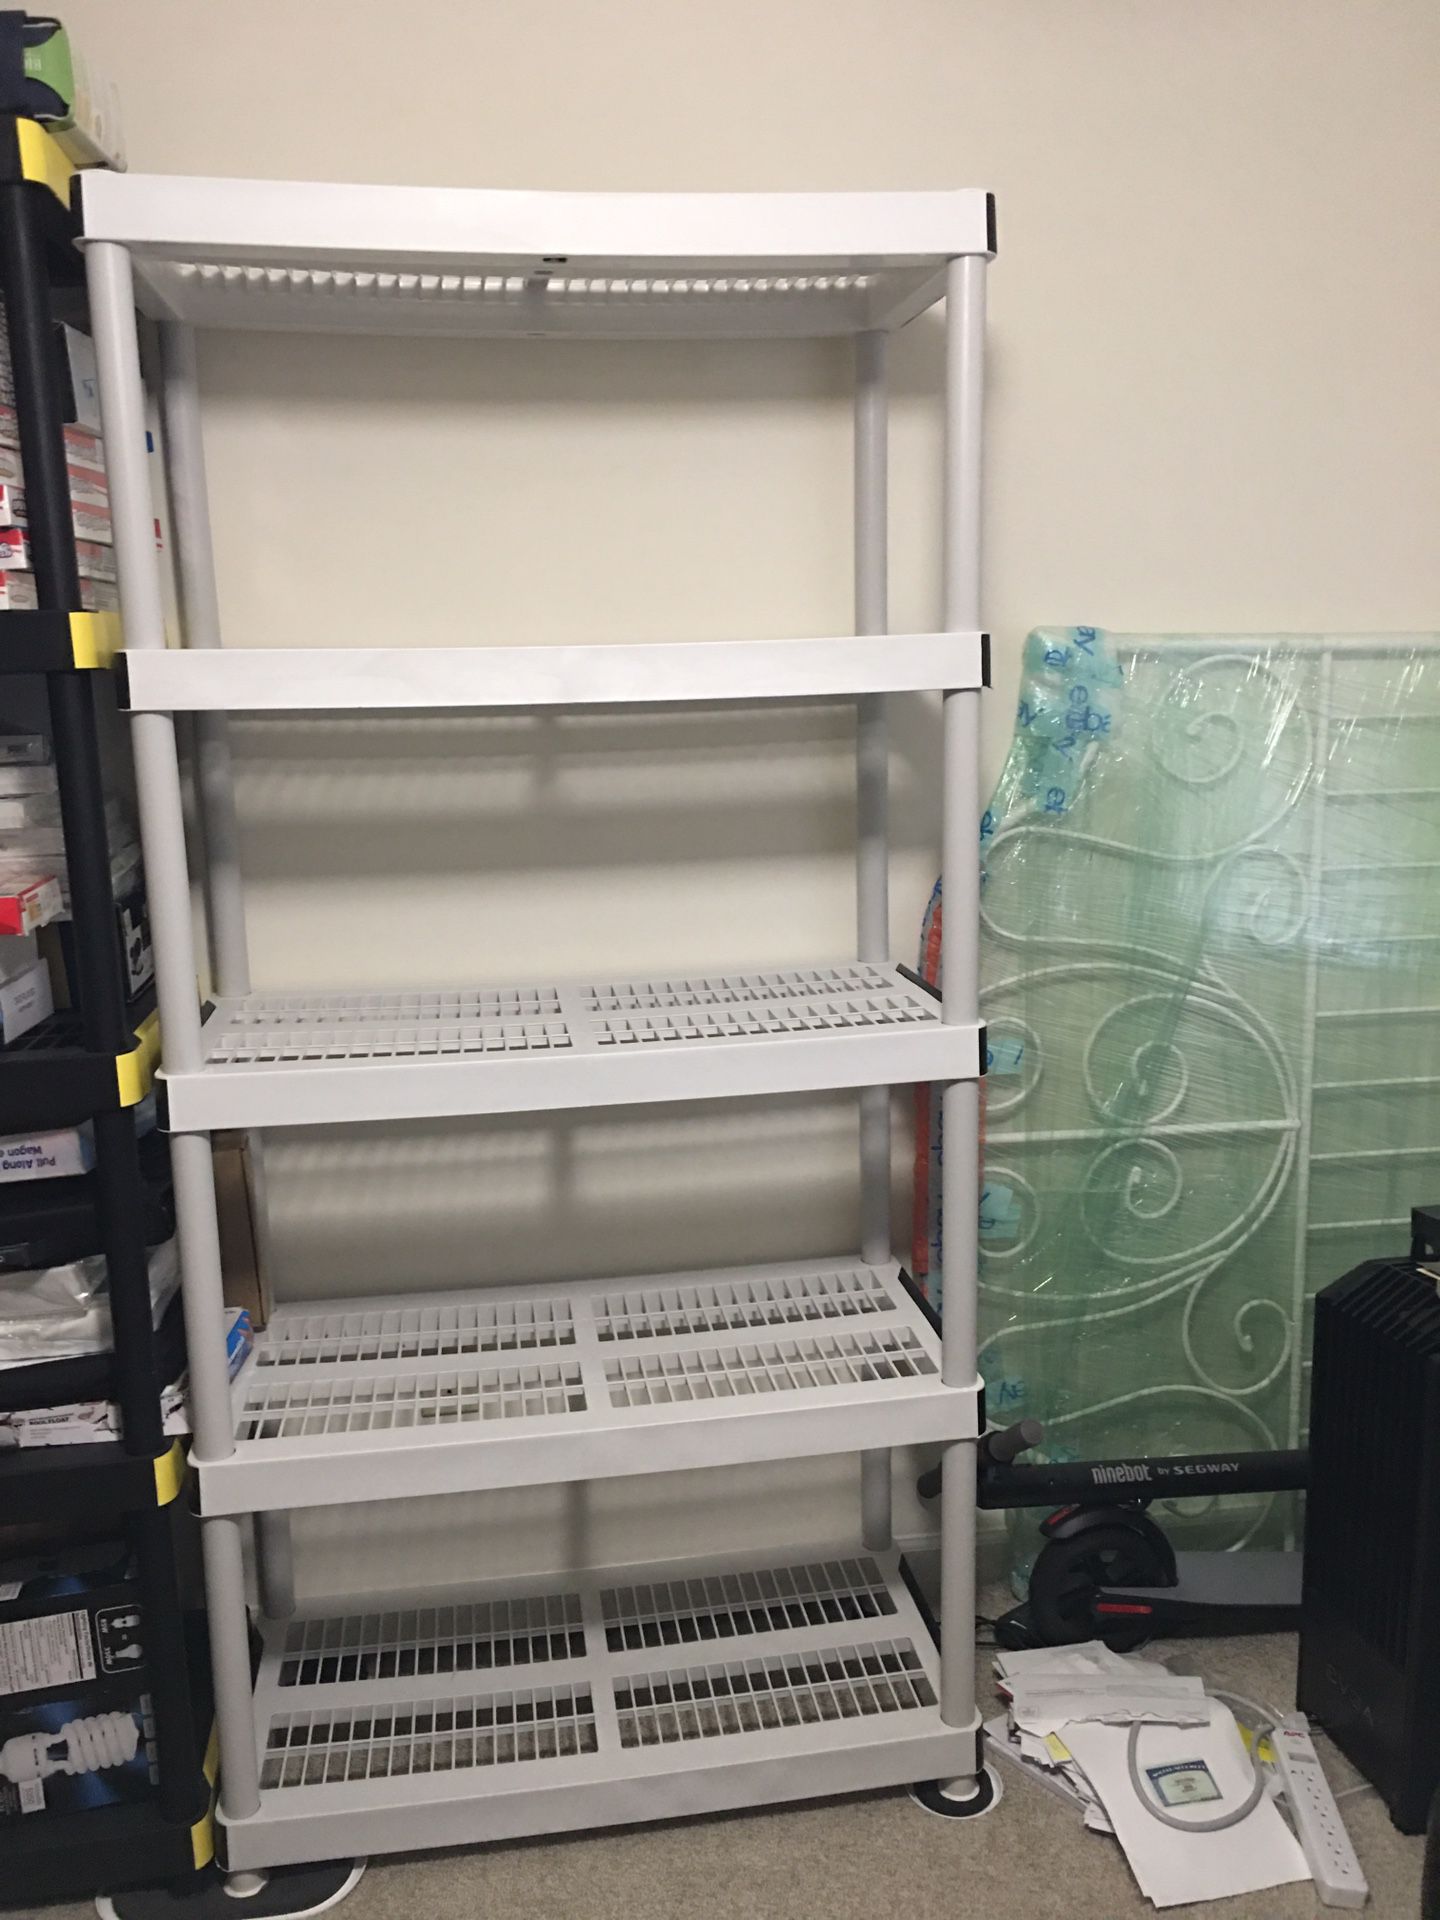 HDX 72 in. H x 36 in. W x 24 in. D 5 Shelf Plastic Ventilated Storage Shelving Unit